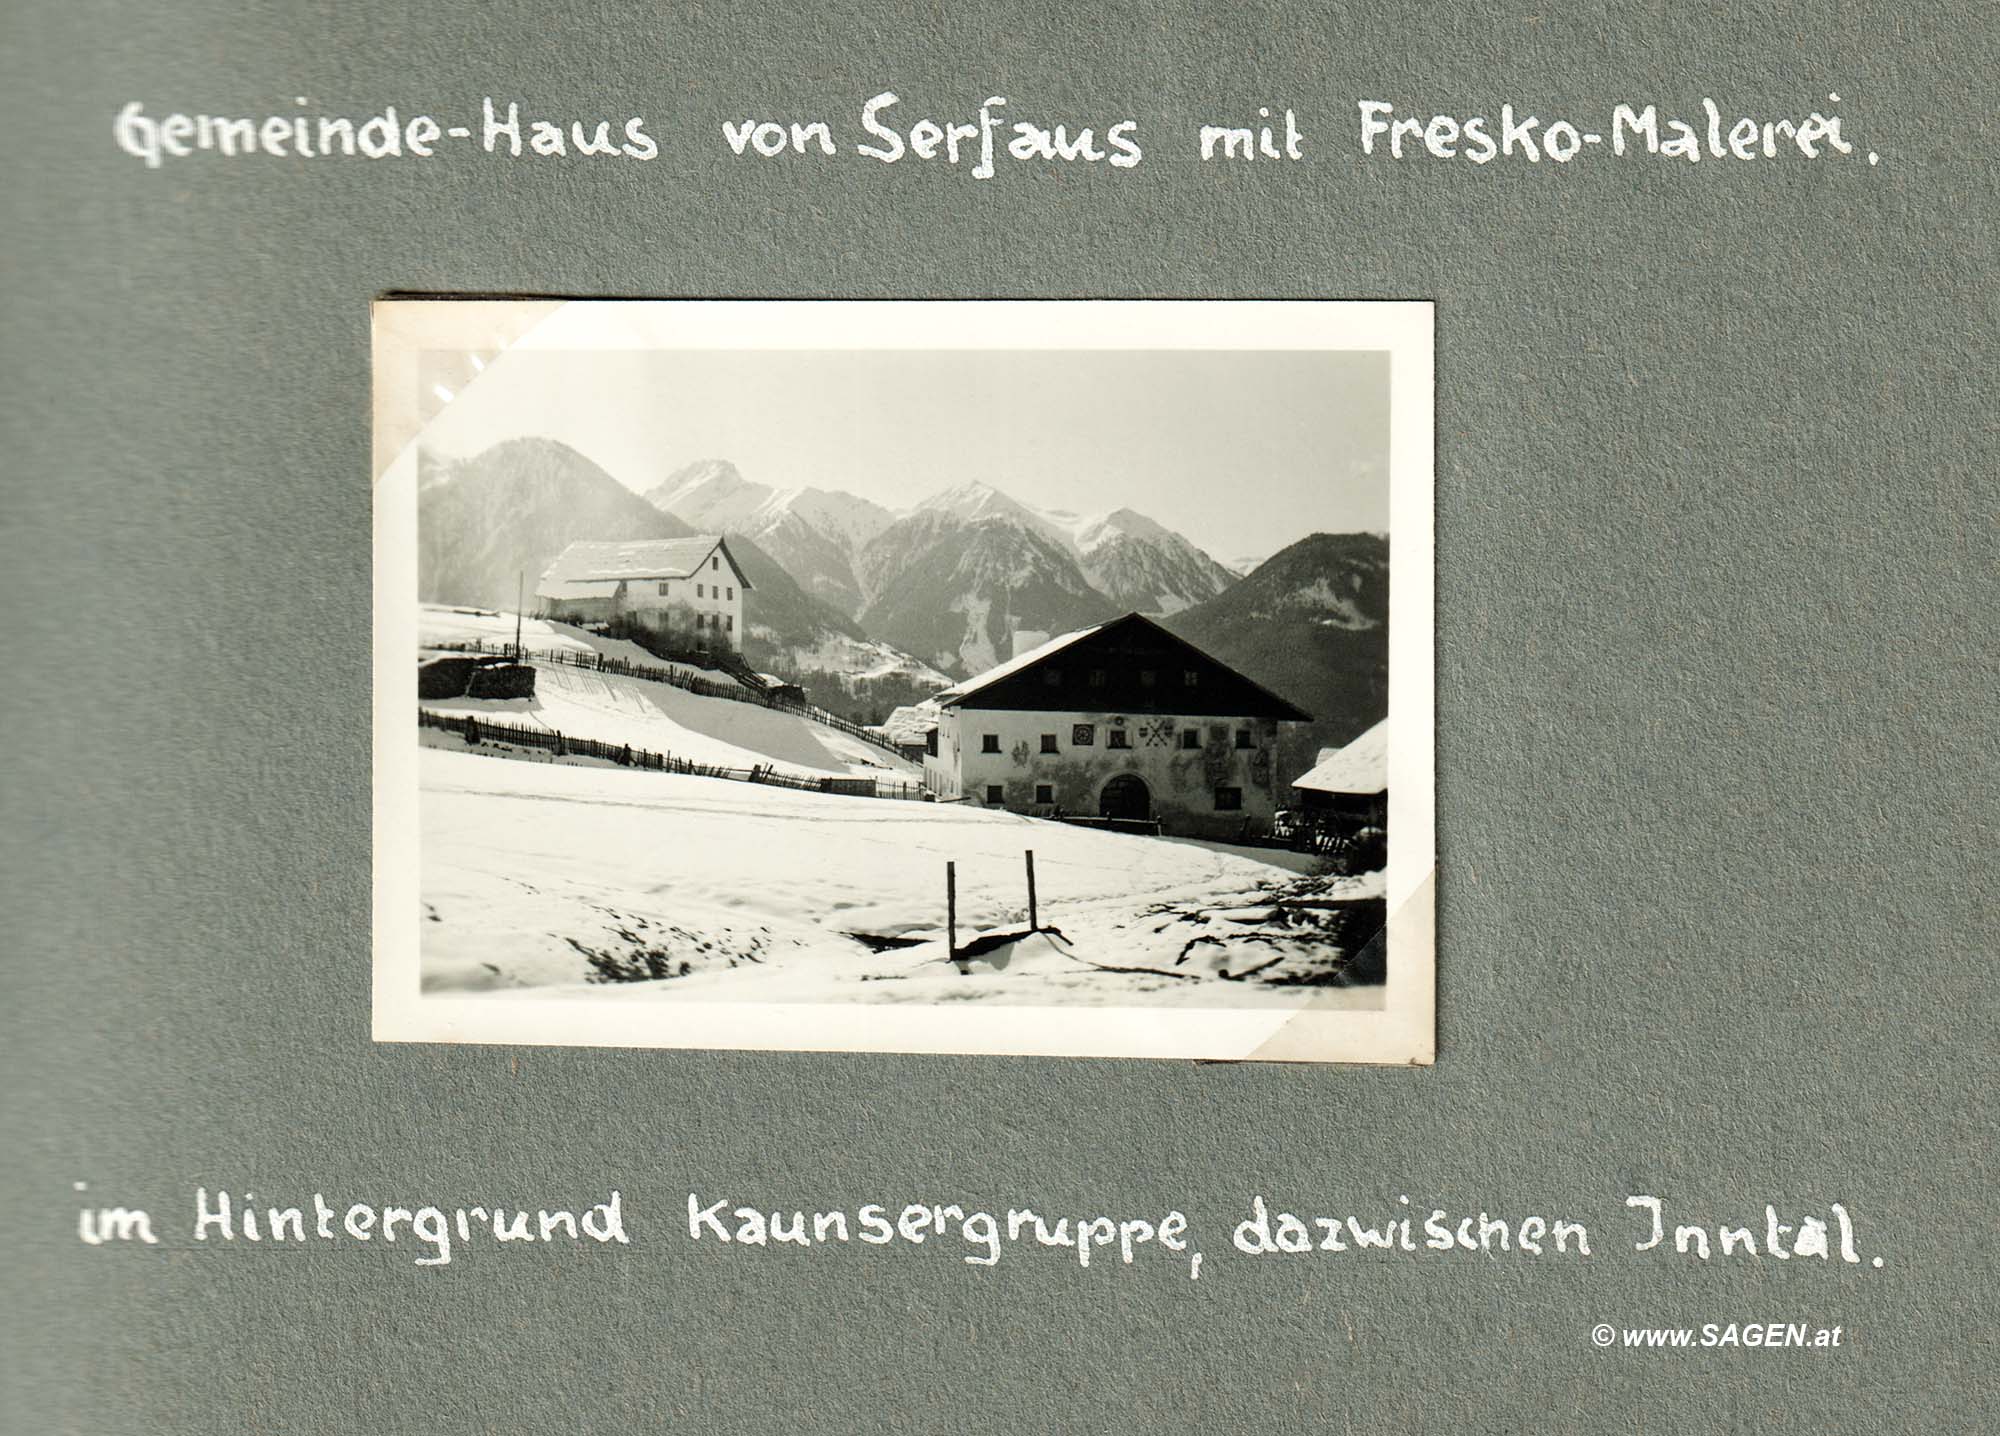 Gemeindehaus von Serfaus mit Fresko-Malerei (Schi-Urlaub 1936 in Serfaus, Tirol)